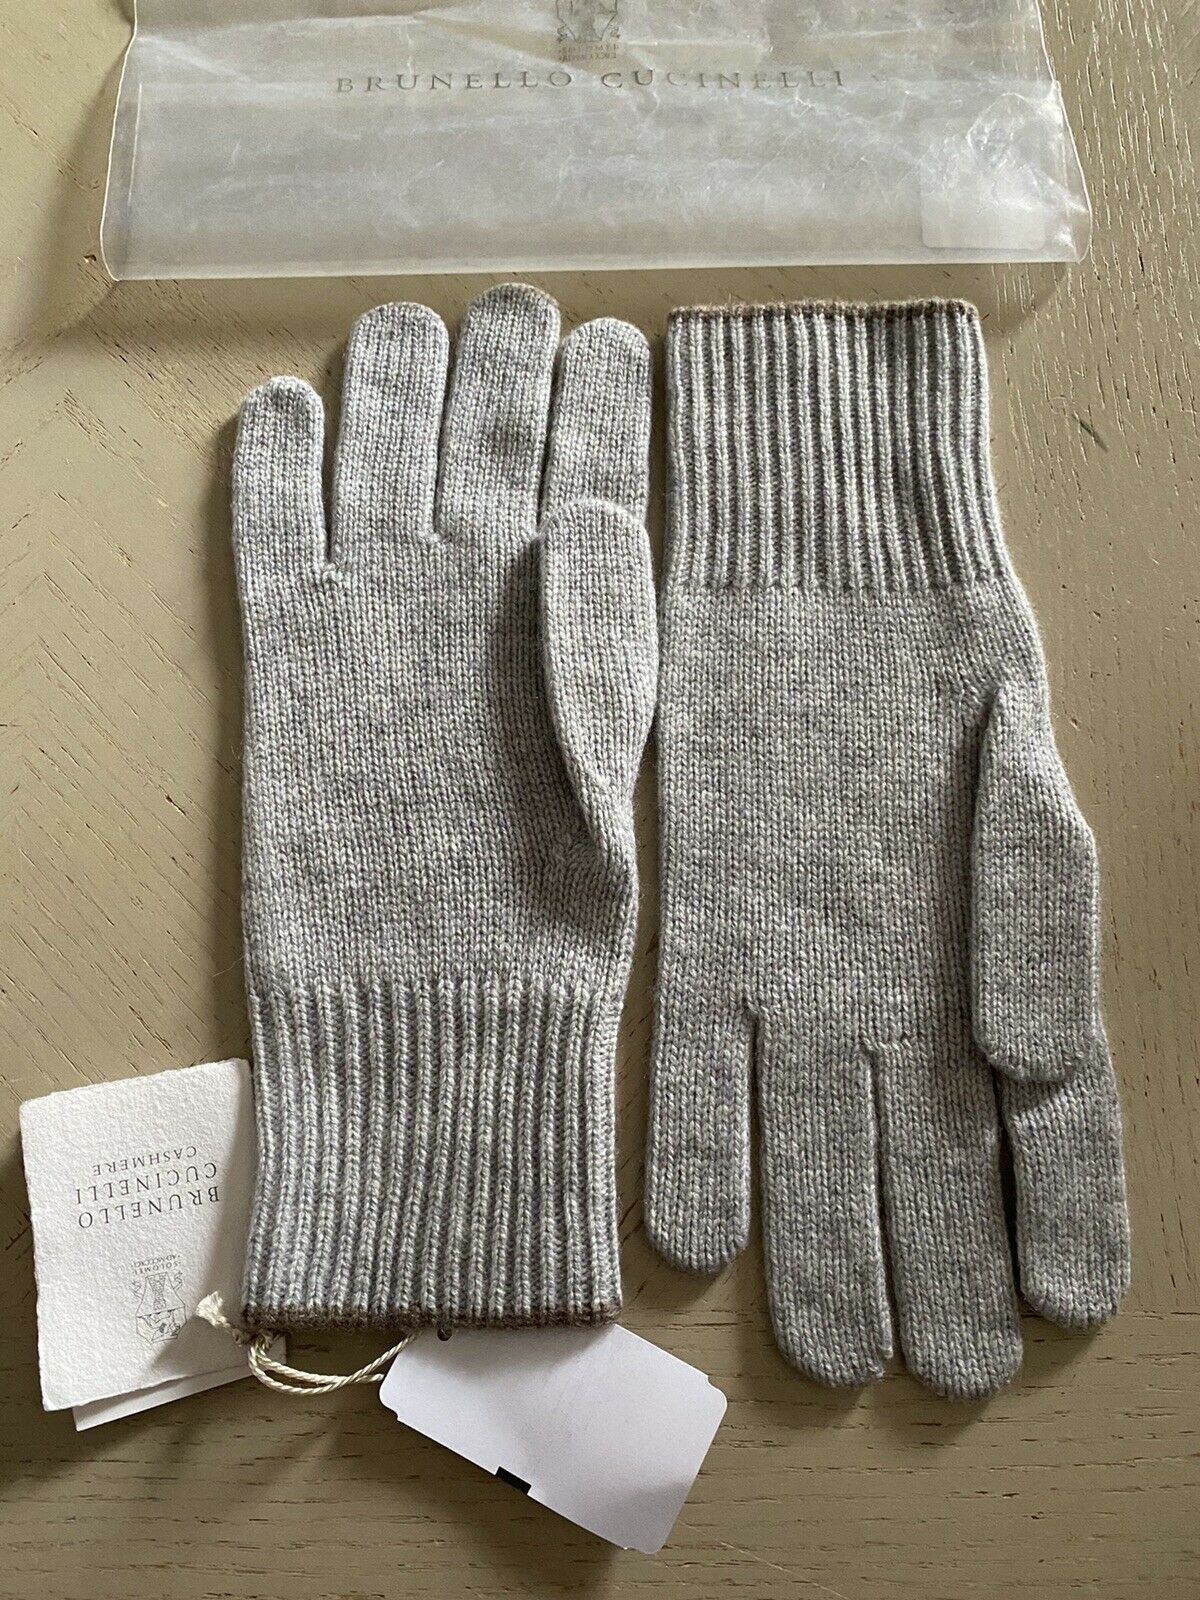 NWT $555 Brunello Cucinelli Женские кашемировые перчатки в рубчик серого цвета, размер L, Италия